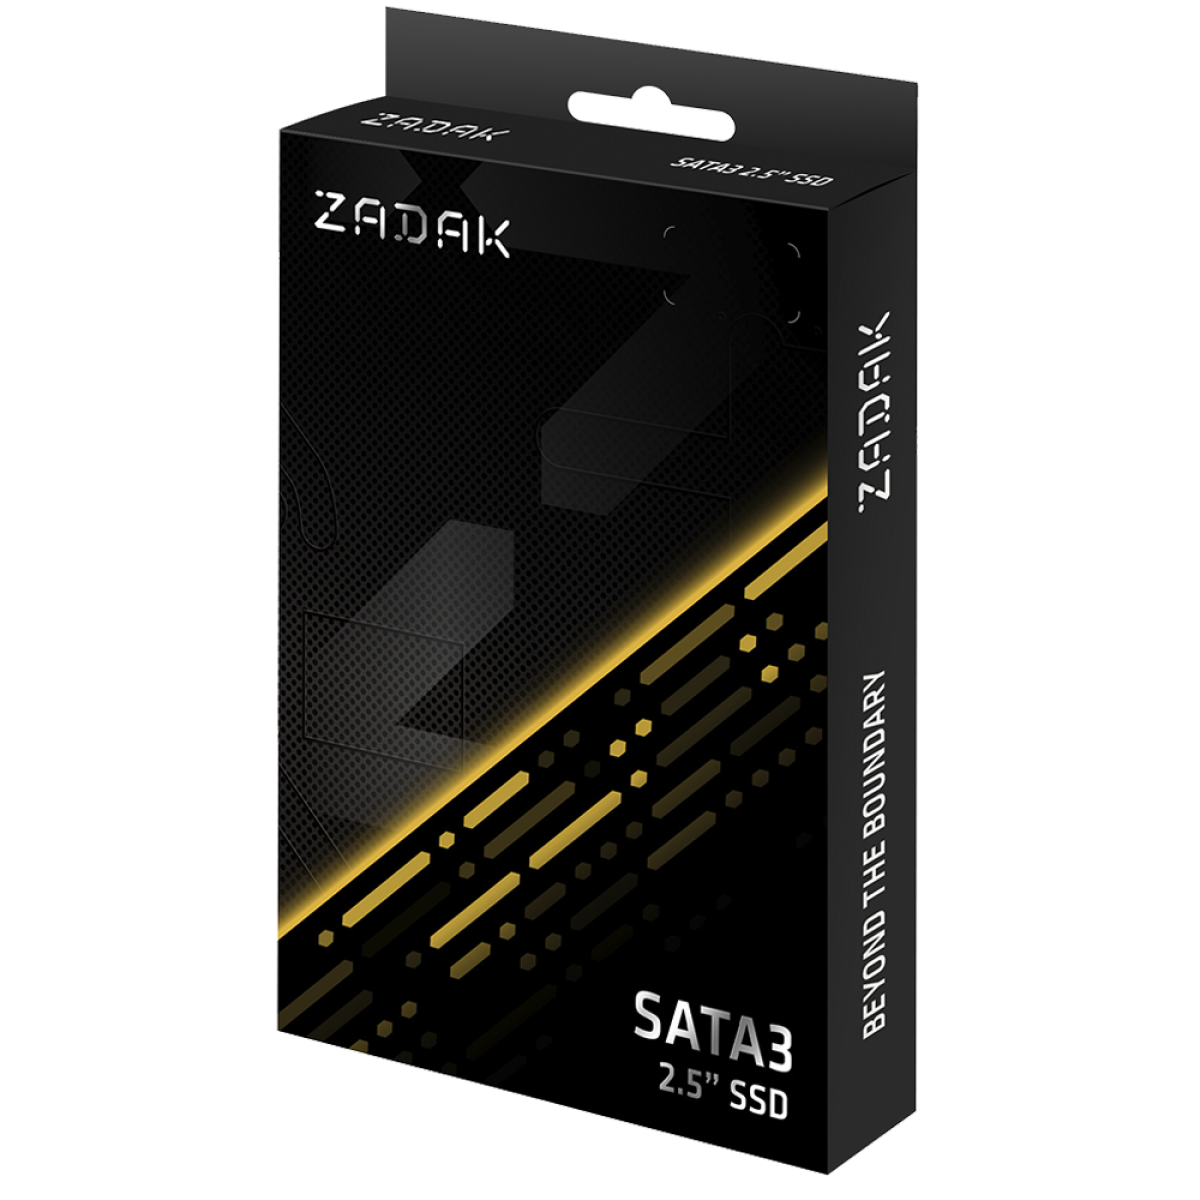 SSD Zadak TWSS3, 512GB, Sata III, Leitura 560MB/s e Gravação 540MB/s, ZS512GTWSS3-1